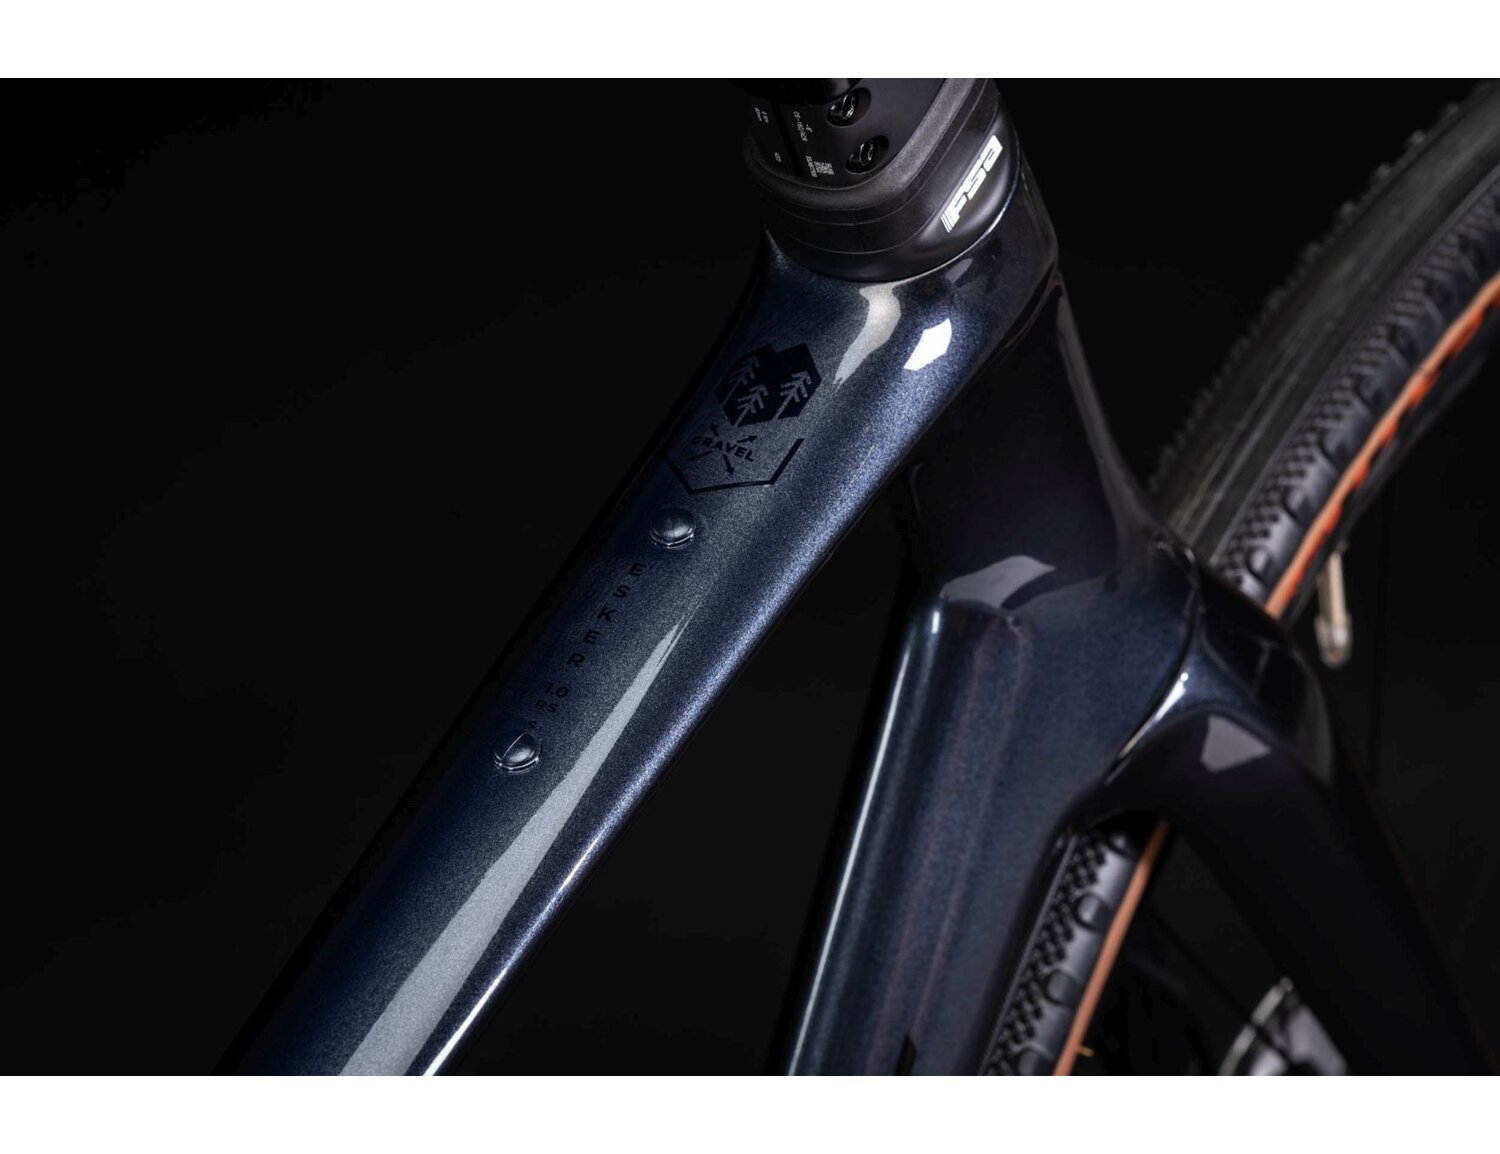 Carbonowa rama i symbol gravela w rowerze gravelowym KROSS Esker RS 1.0 